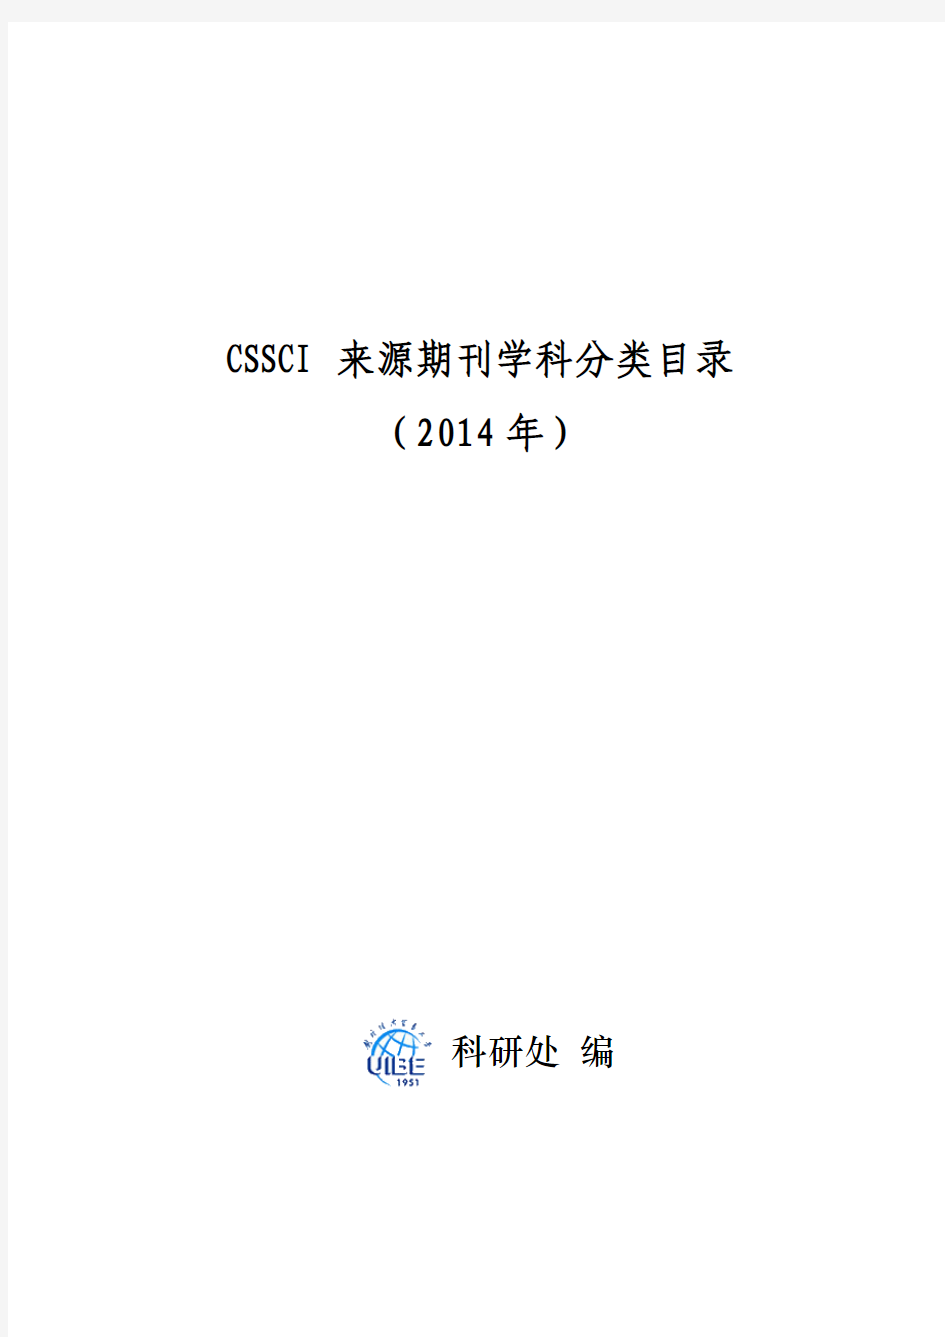 CSSCI来源期刊学科分类目录(2014-2015)